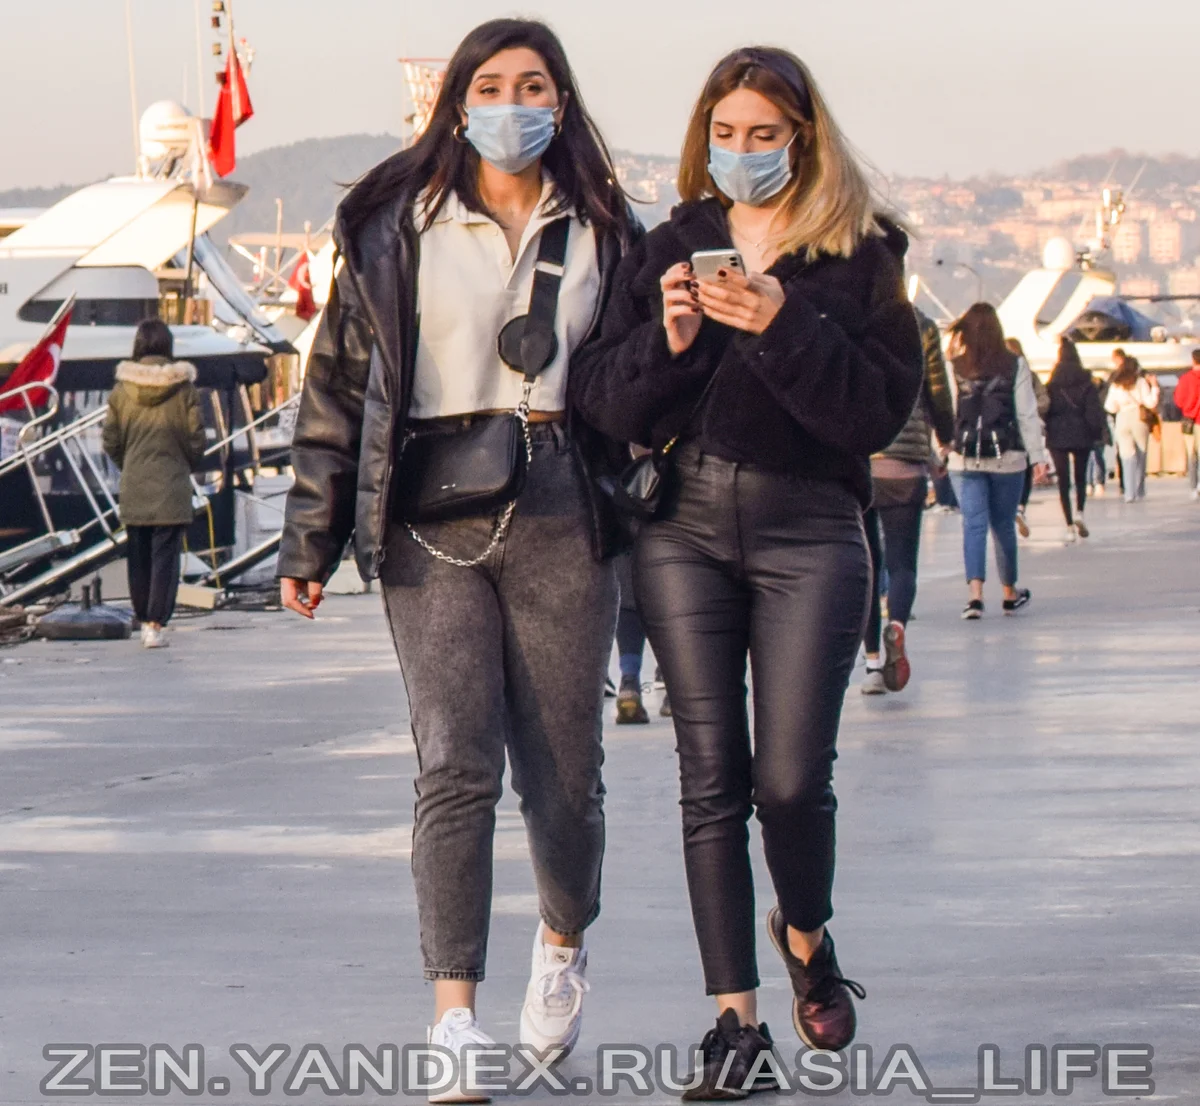 Что нельзя делать в Турции: список запретов на отдыхе